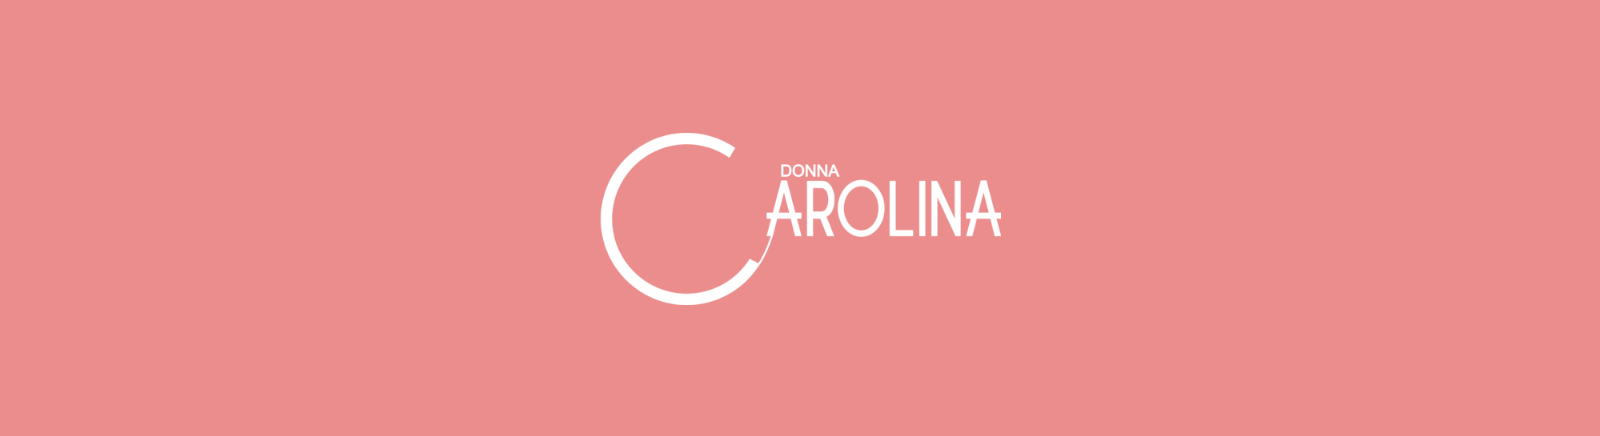 Prange: Donna Carolina Schnürschuhe für Damen online shoppen